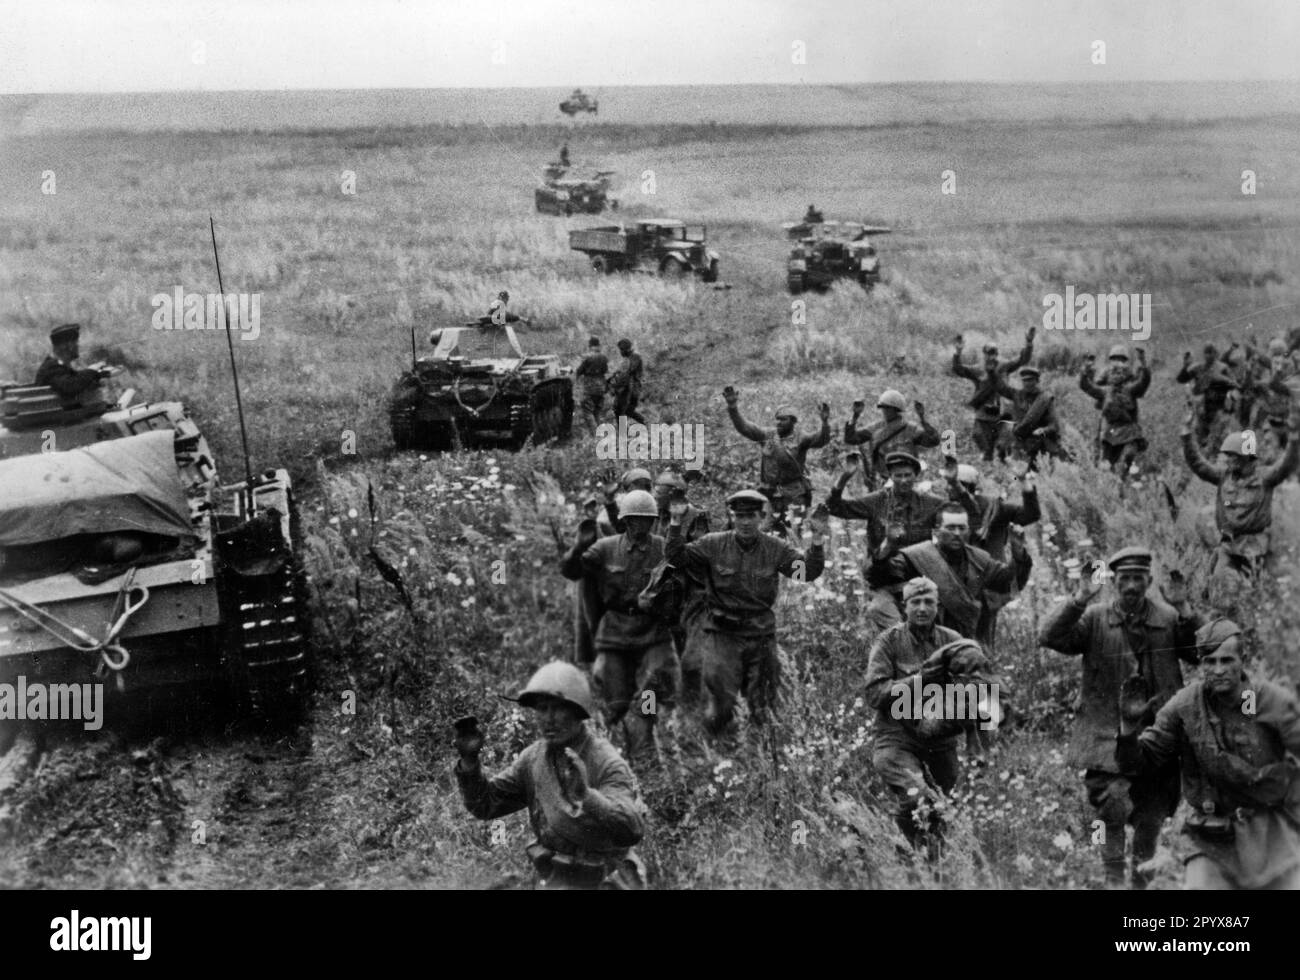 Les soldats russes se rendent en captivité devant une unité tank allemande. Devant un Panzer III, en arrière-plan un Panzer IV La photo a été prise lors de l'offensive allemande dans le sud de l'Ukraine vers Stalingrad. [traduction automatique] Banque D'Images